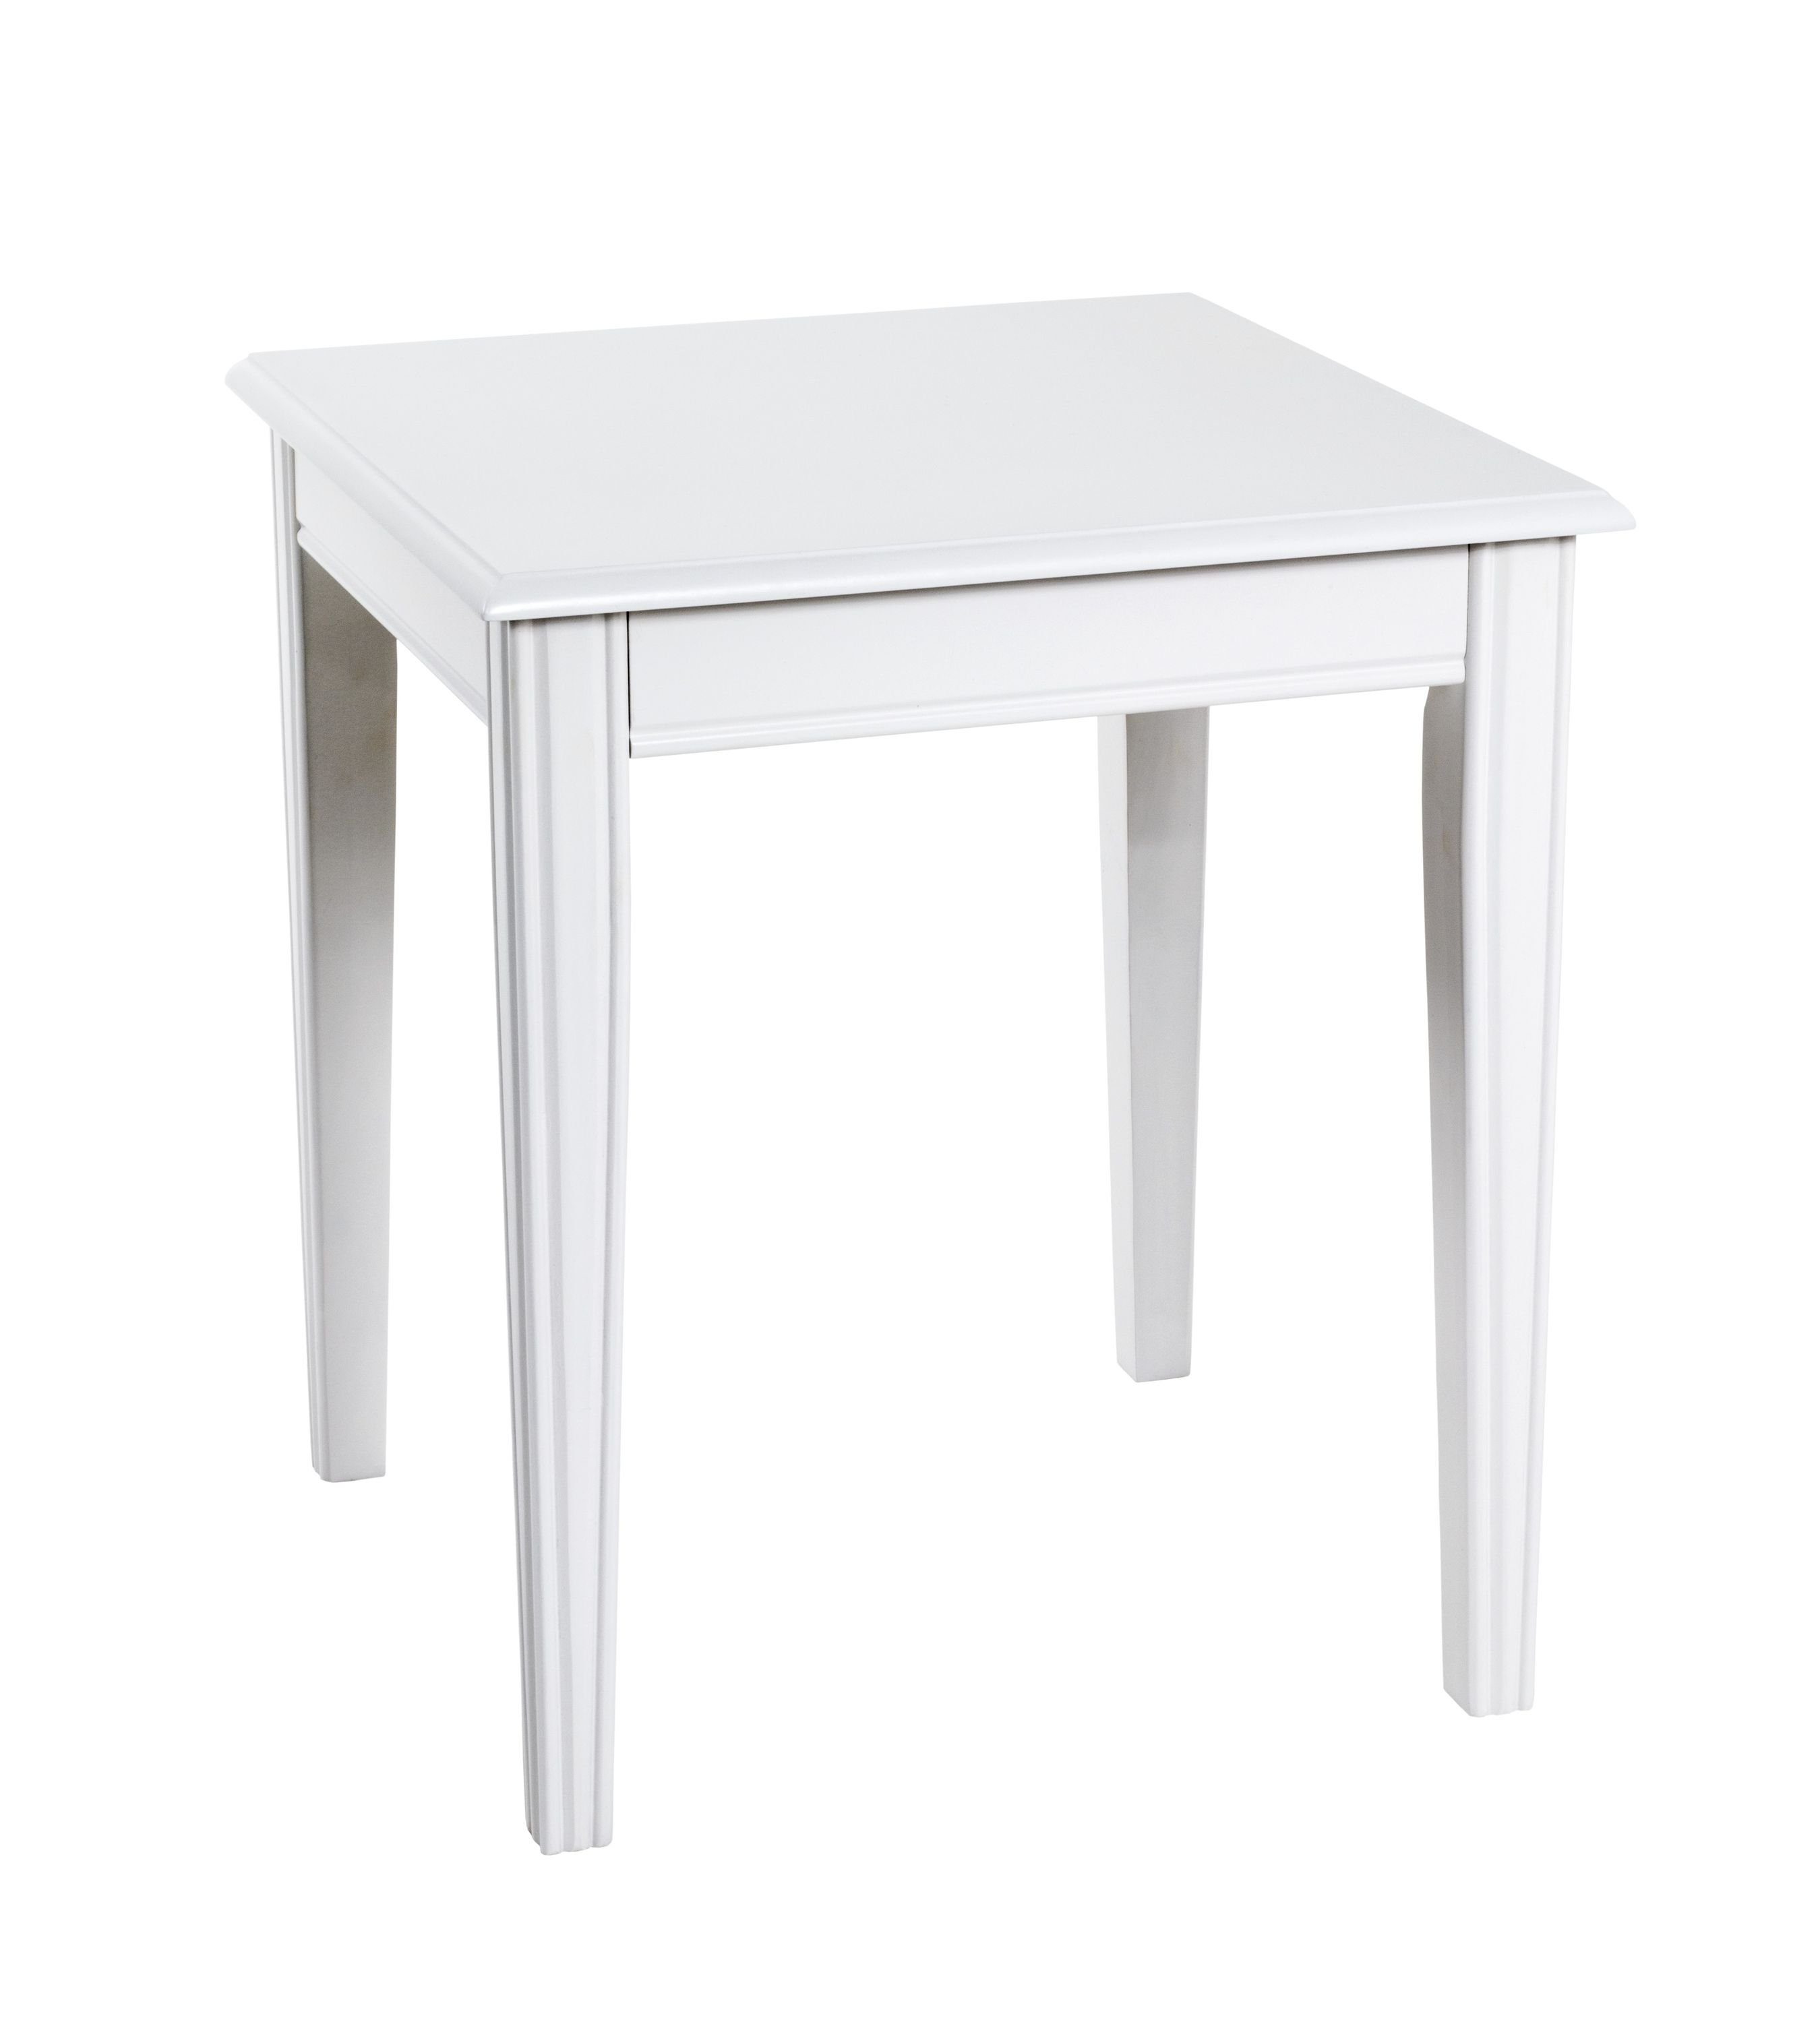 HAKU Beistelltisch Beistelltisch, HAKU Möbel Beistelltisch weiß (BHT 45x51x45 cm) BHT 45x51x45 cm weiß